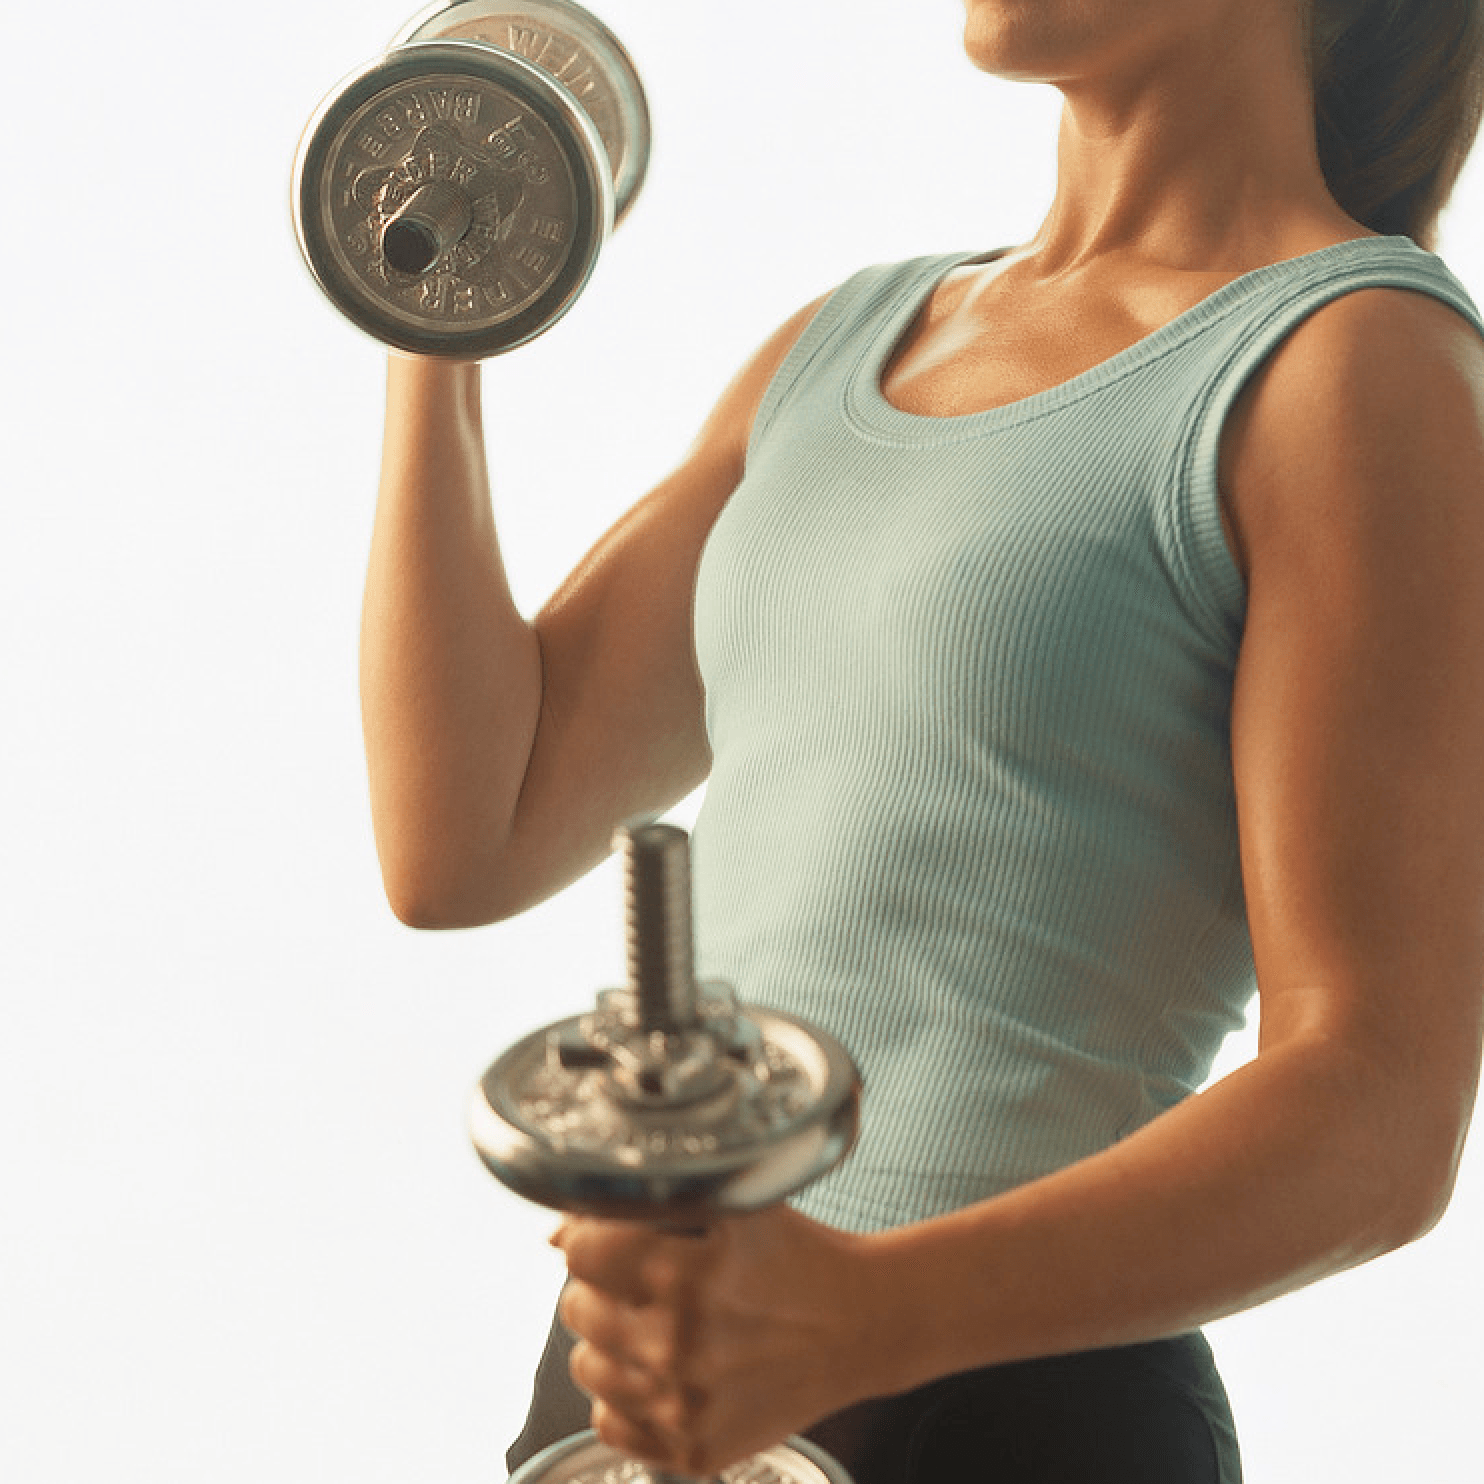  9 סיבות שאישה צריכה להרים משקולות לירידה במשקל